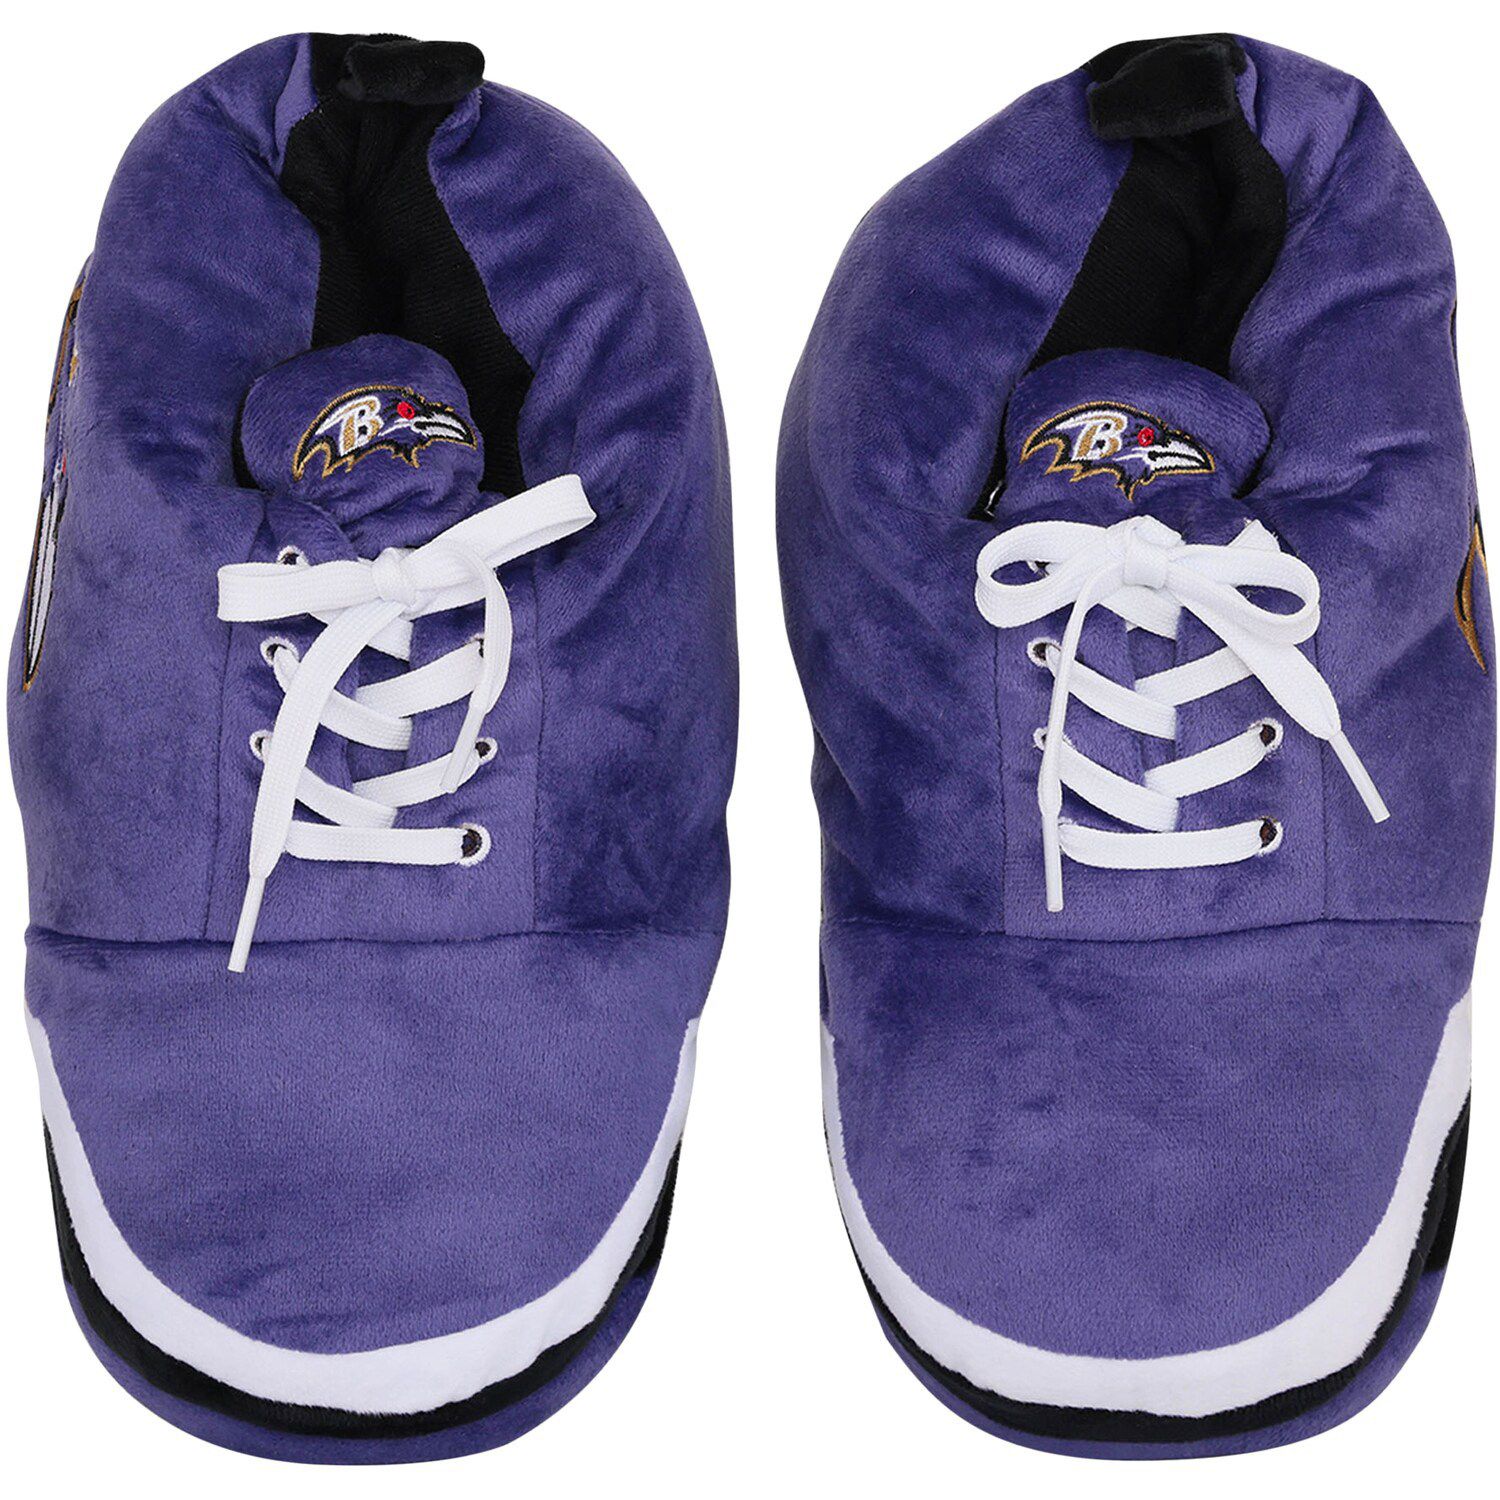 Image for Unbranded Men's FOCO Baltimore Ravens Plush Sneaker Slippers at Kohl's.